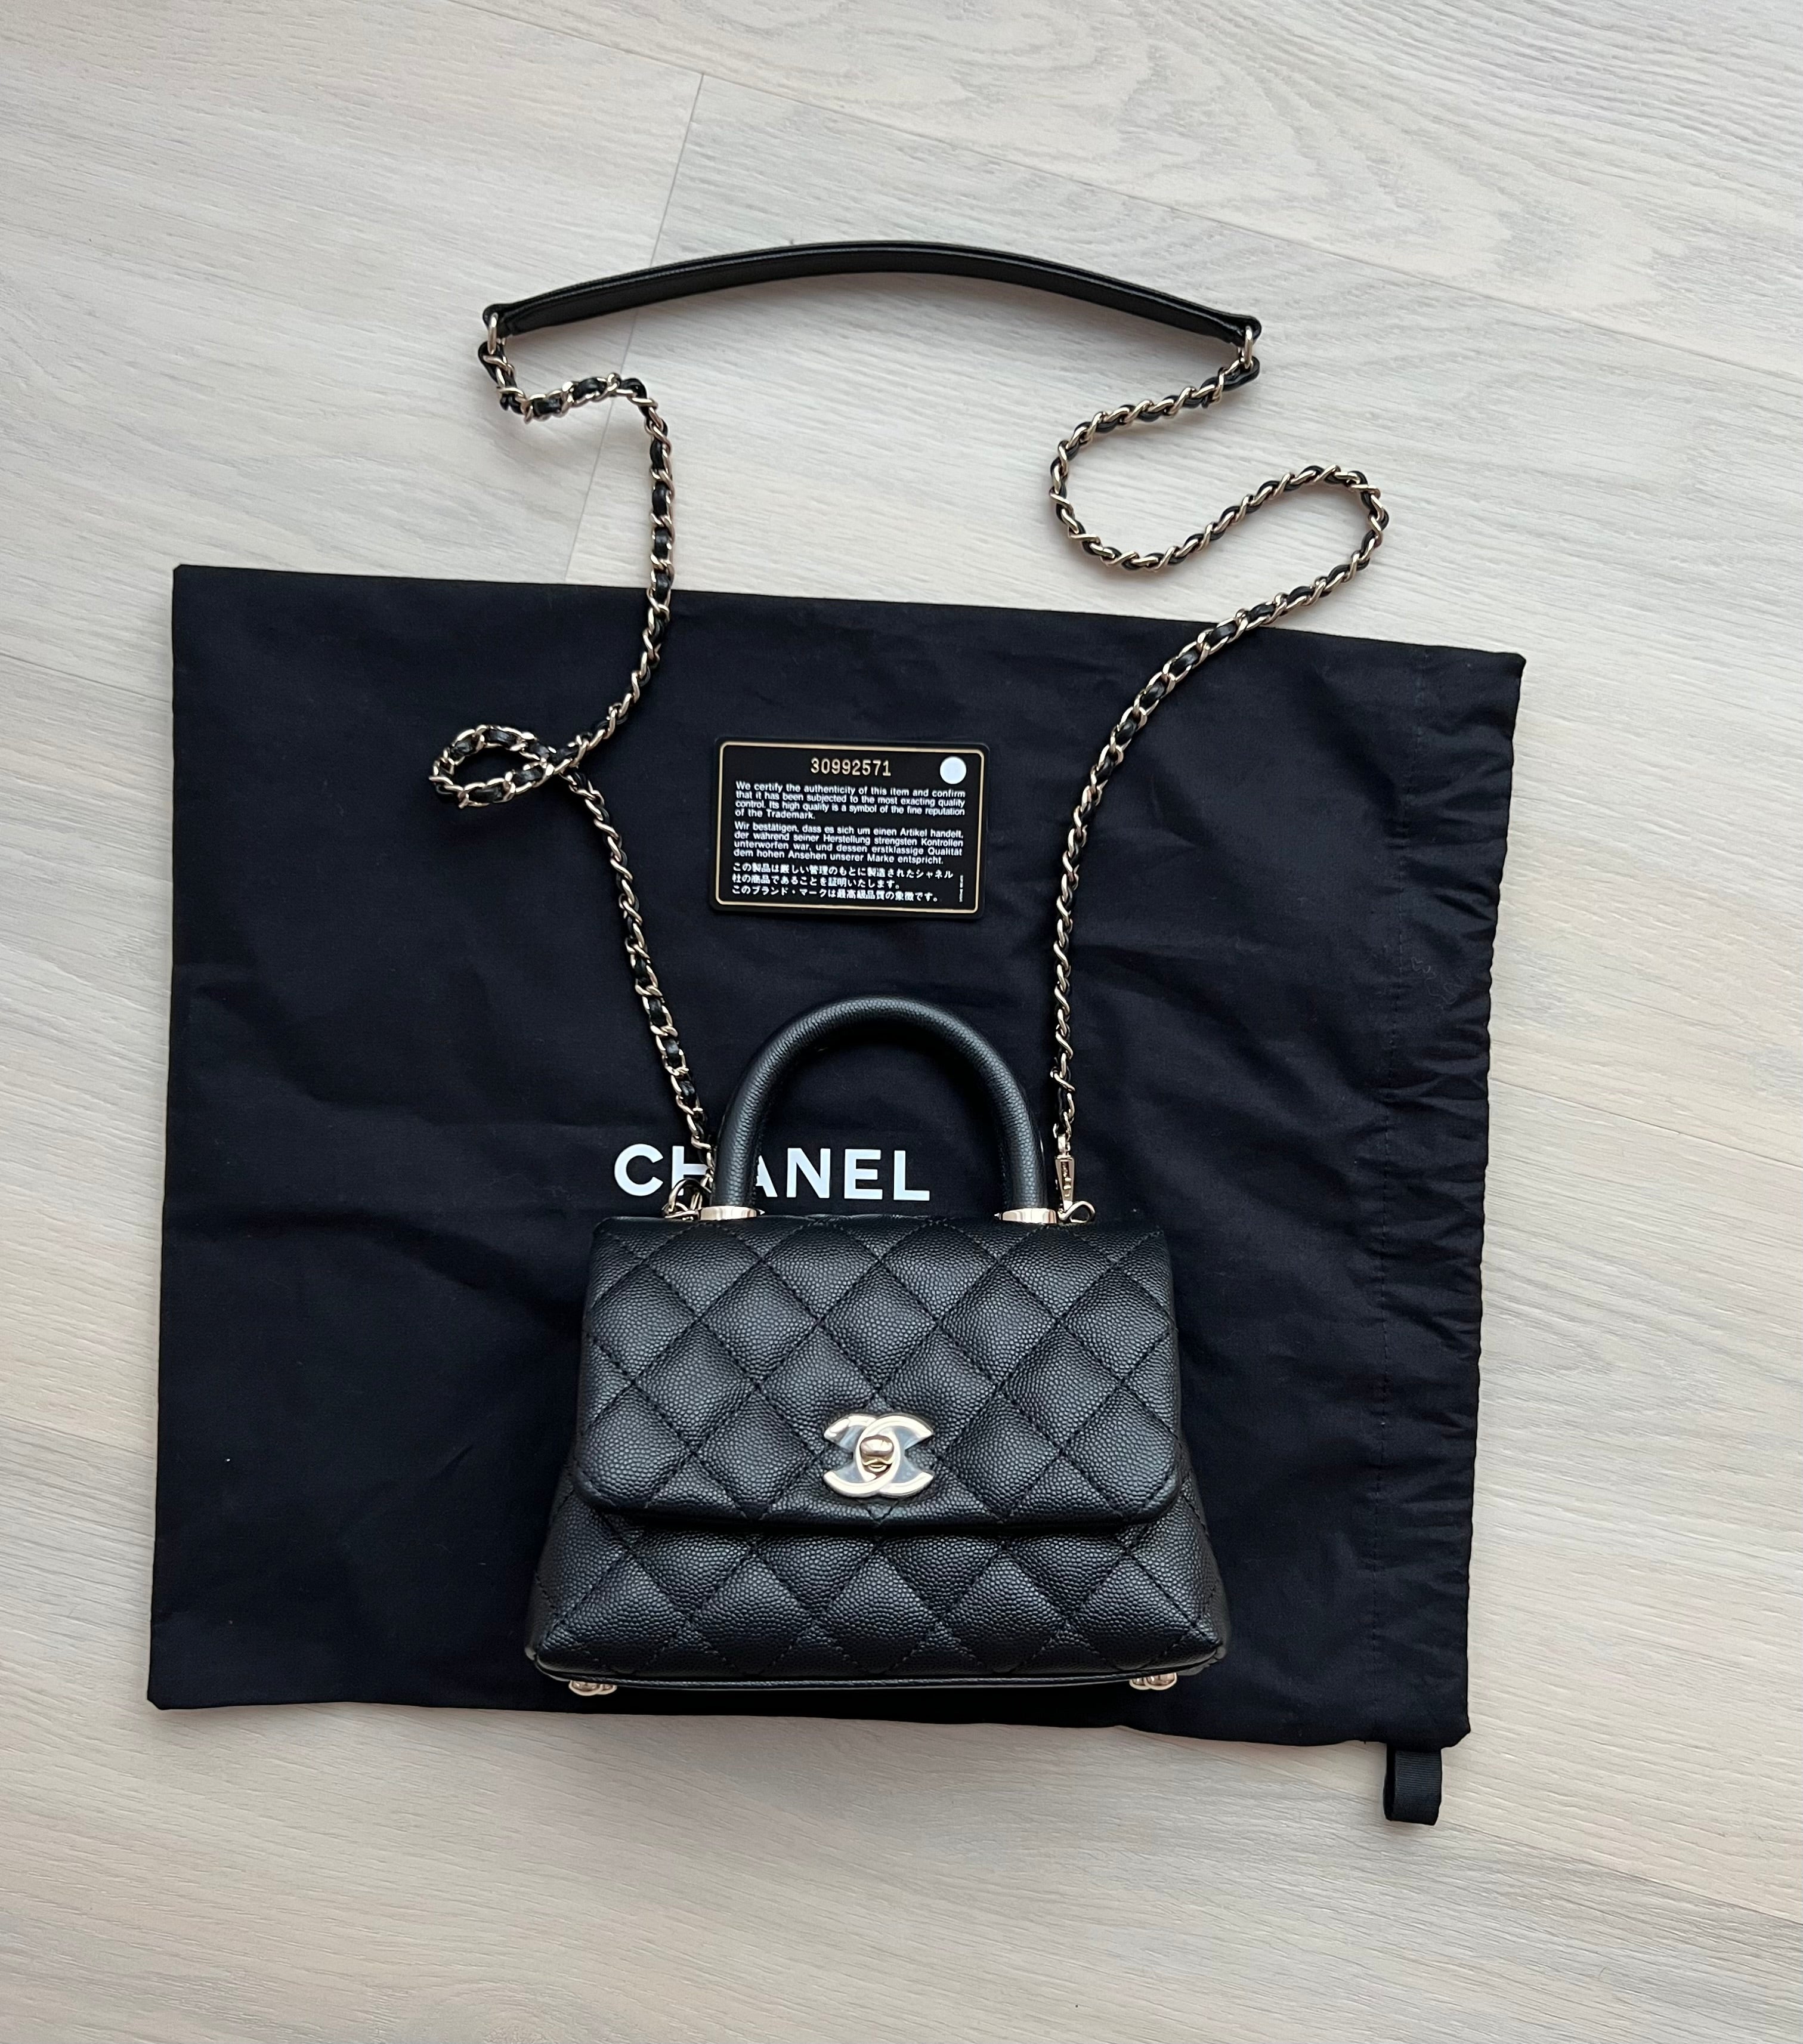 Handbags  Bags  Fashion  CHANEL